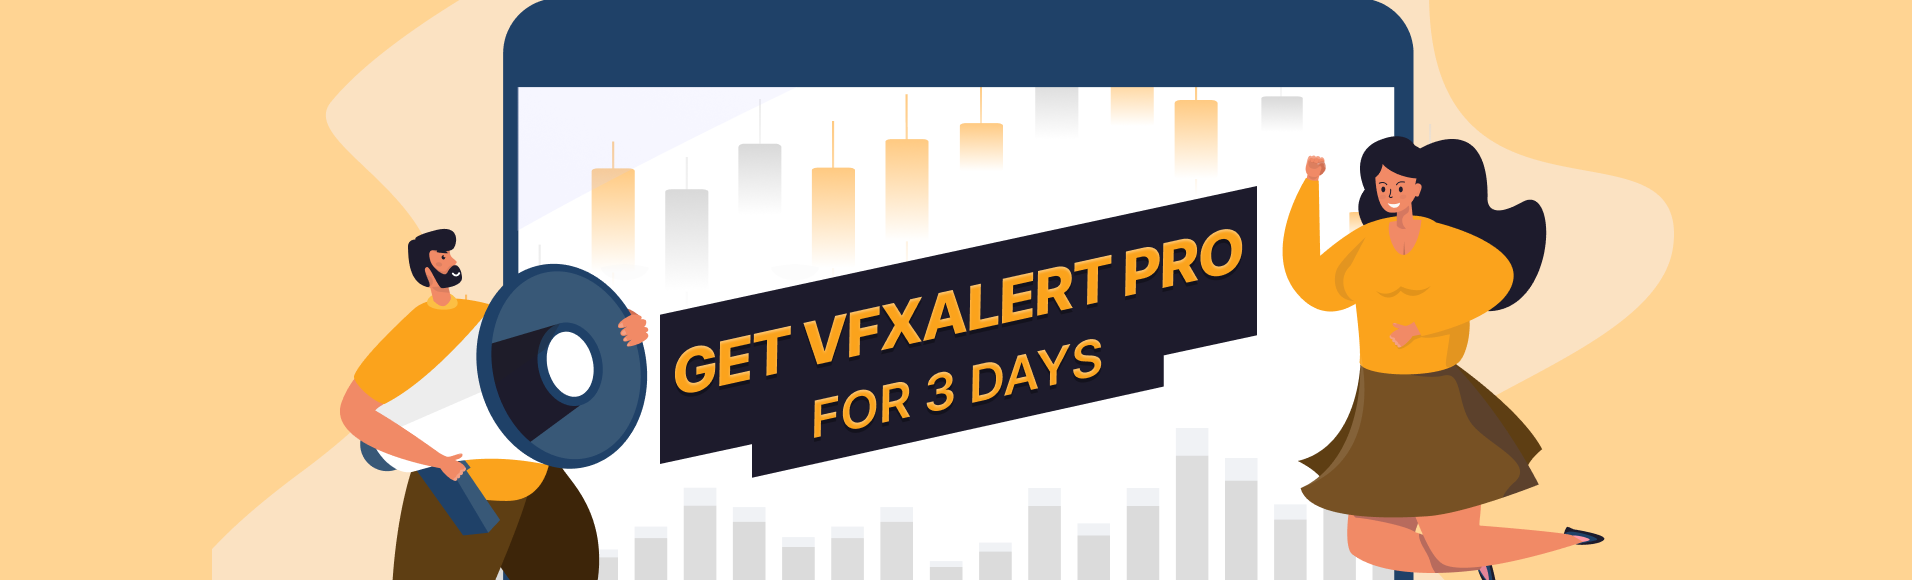 Điều khoản và điều kiện của chương trình khuyến mãi  vfxAlert PRO trong 3 ngày 